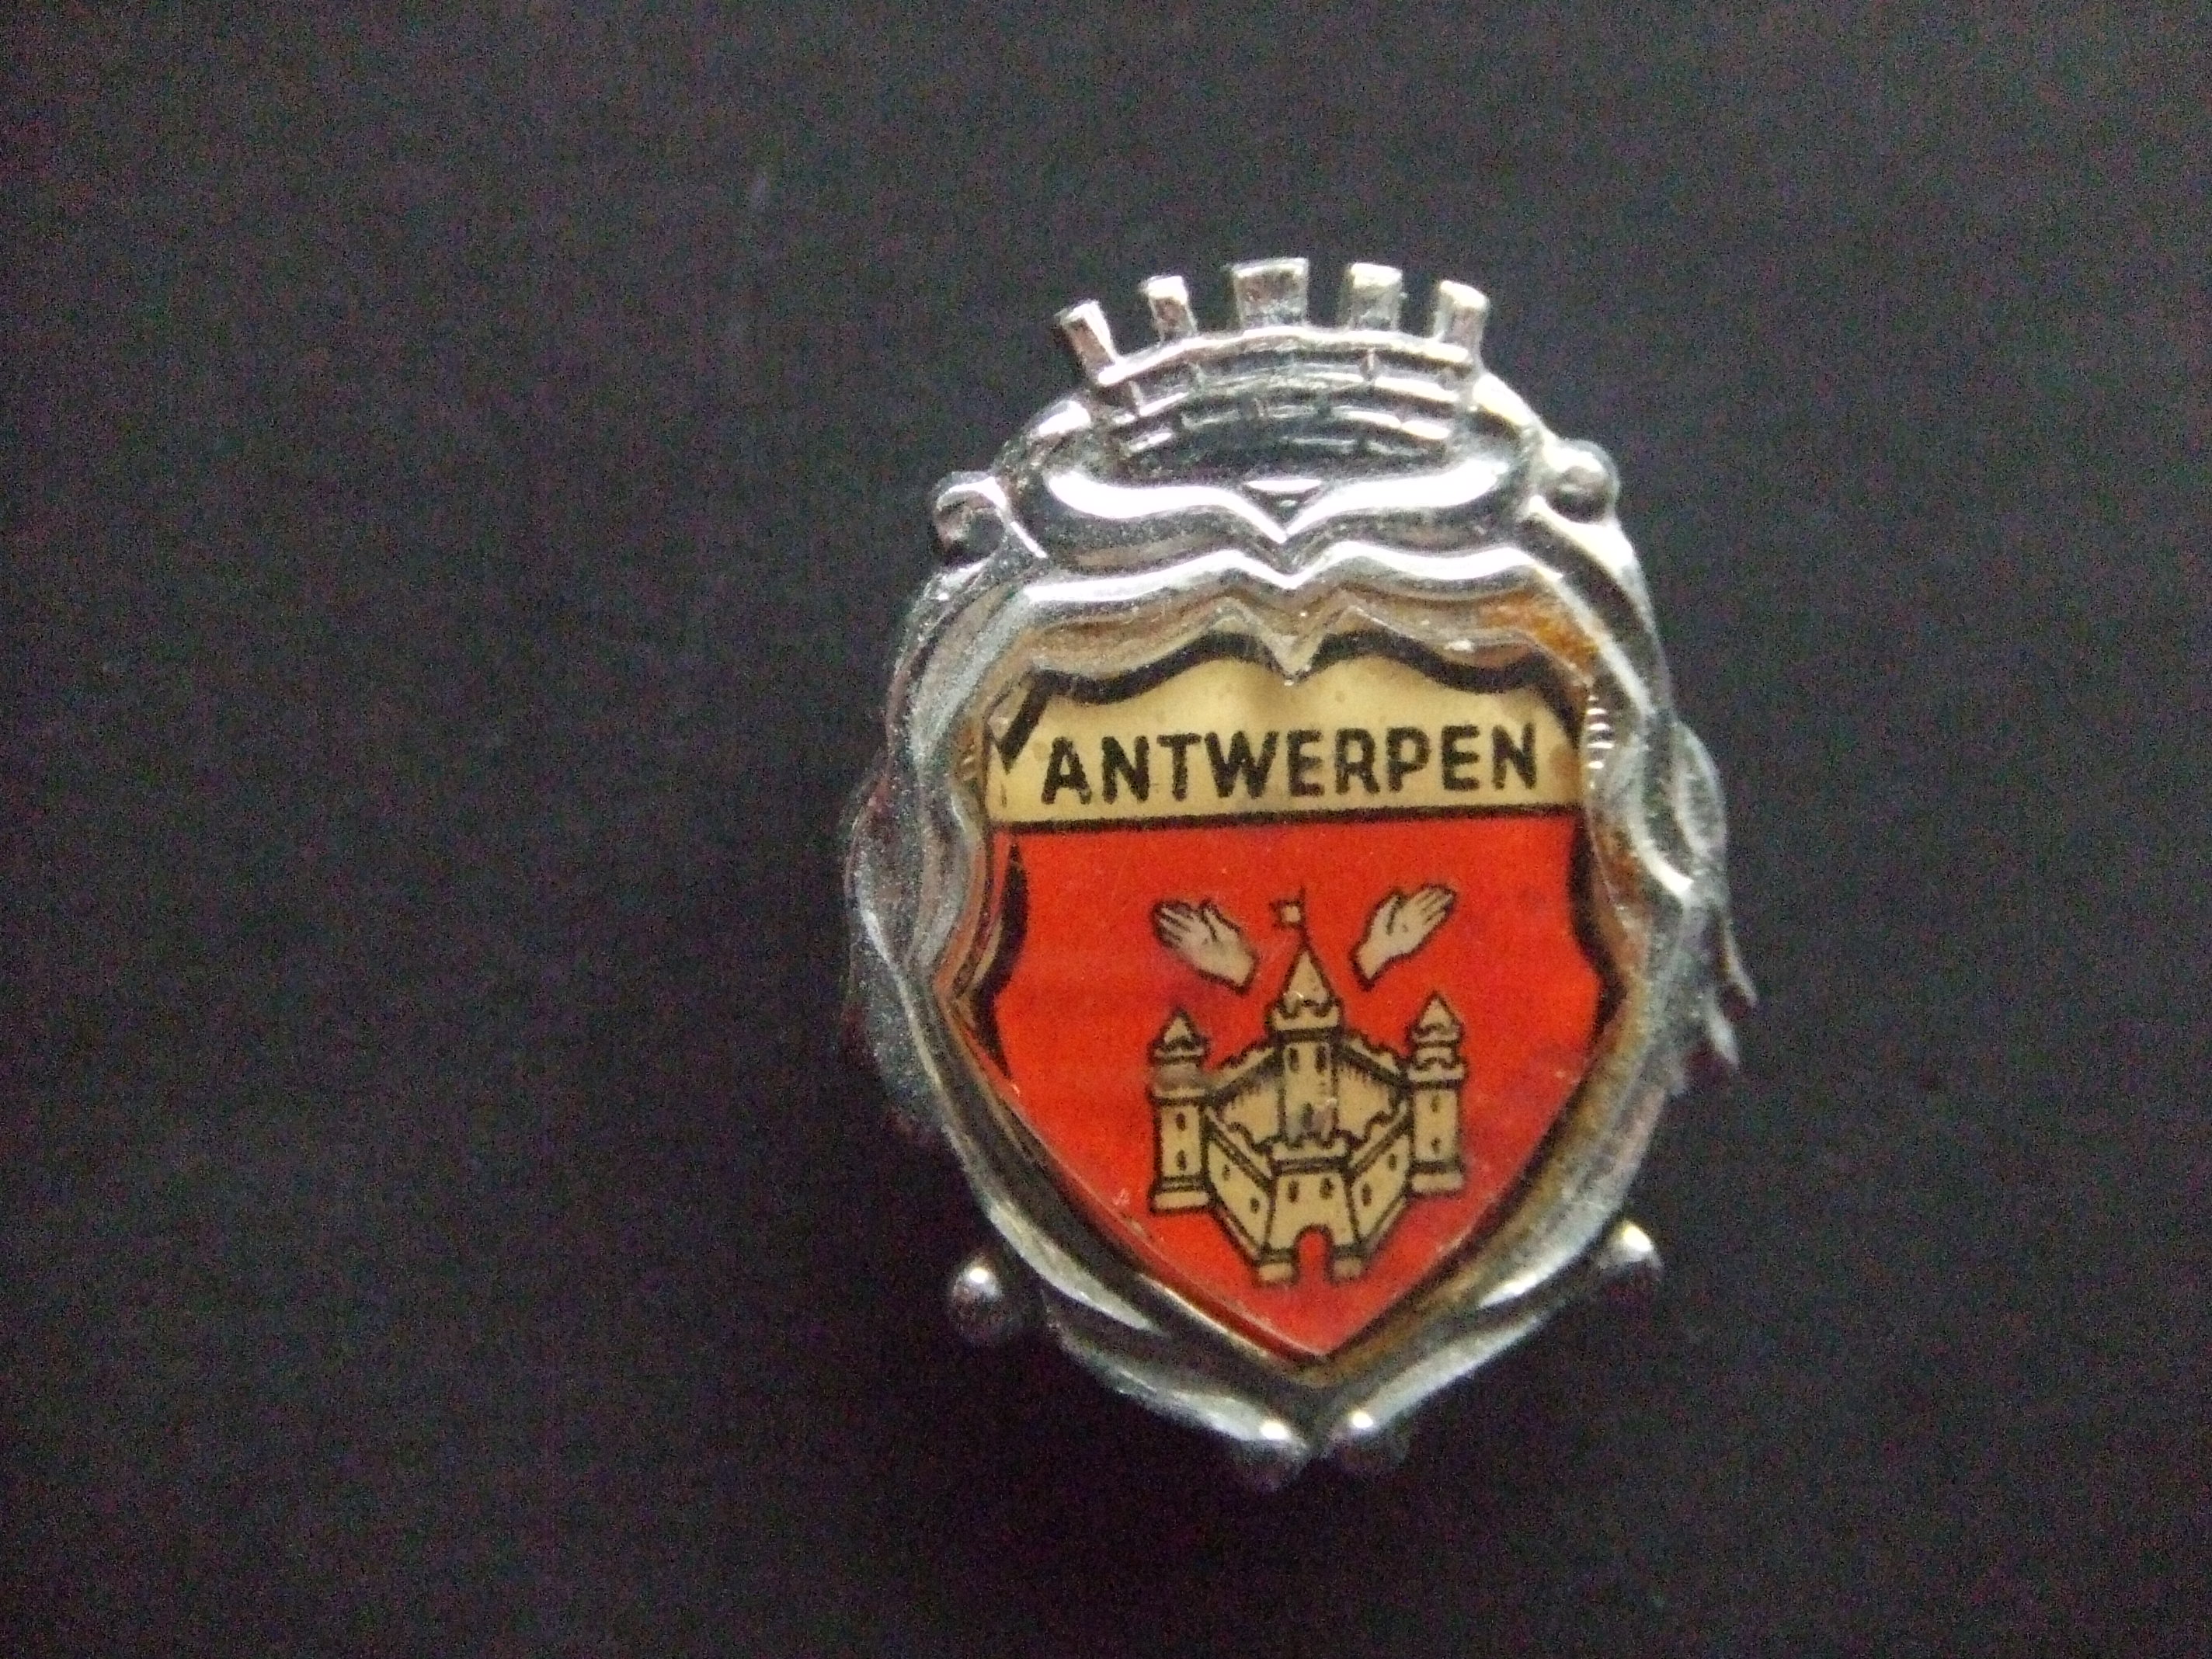 Antwerpen stadswapen logo zilverkleurige rand